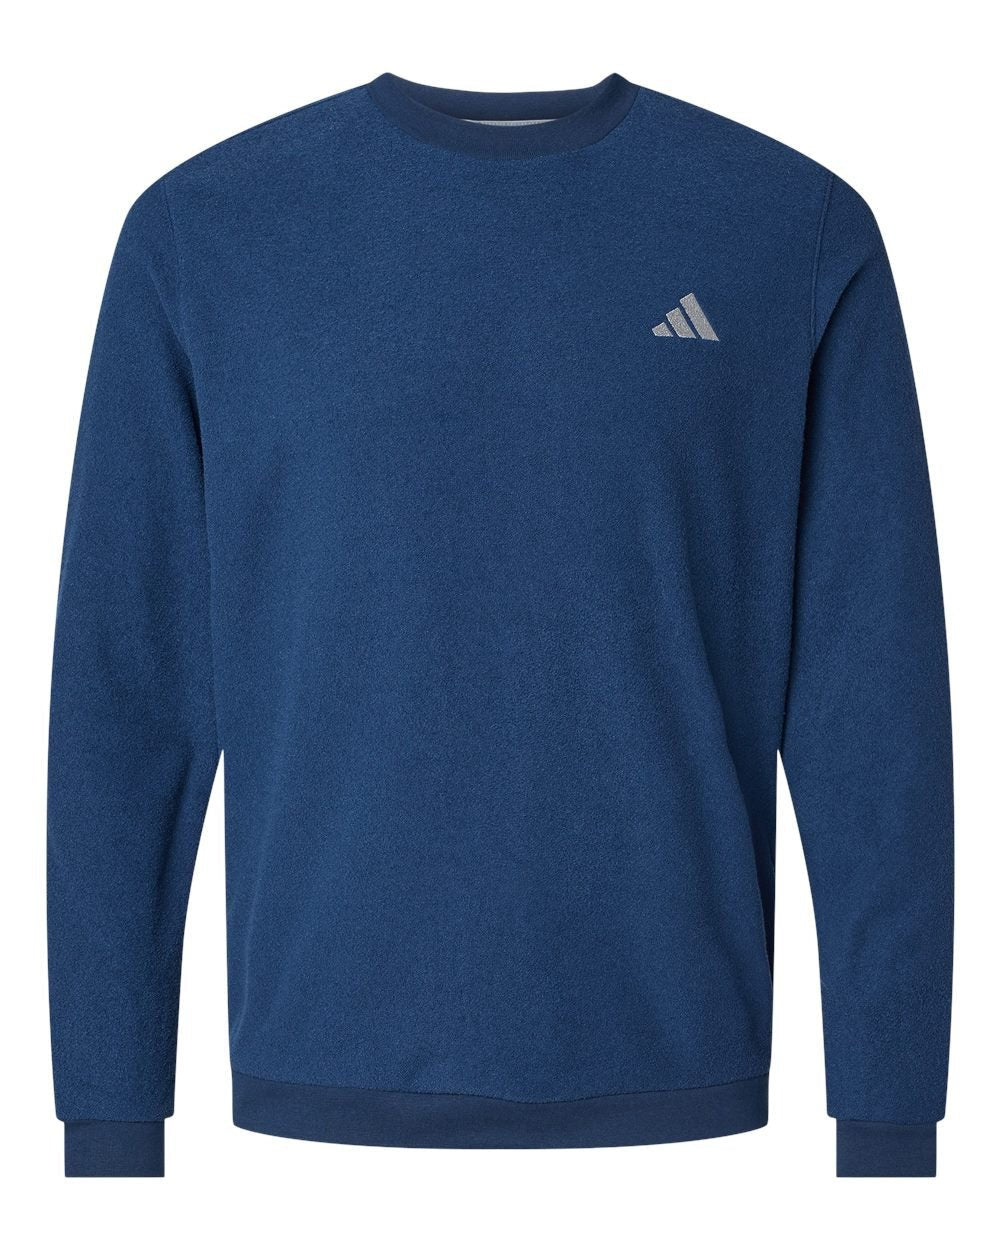 Adidas A586 Crewneck Sweatshirt #color_Collegiate Navy